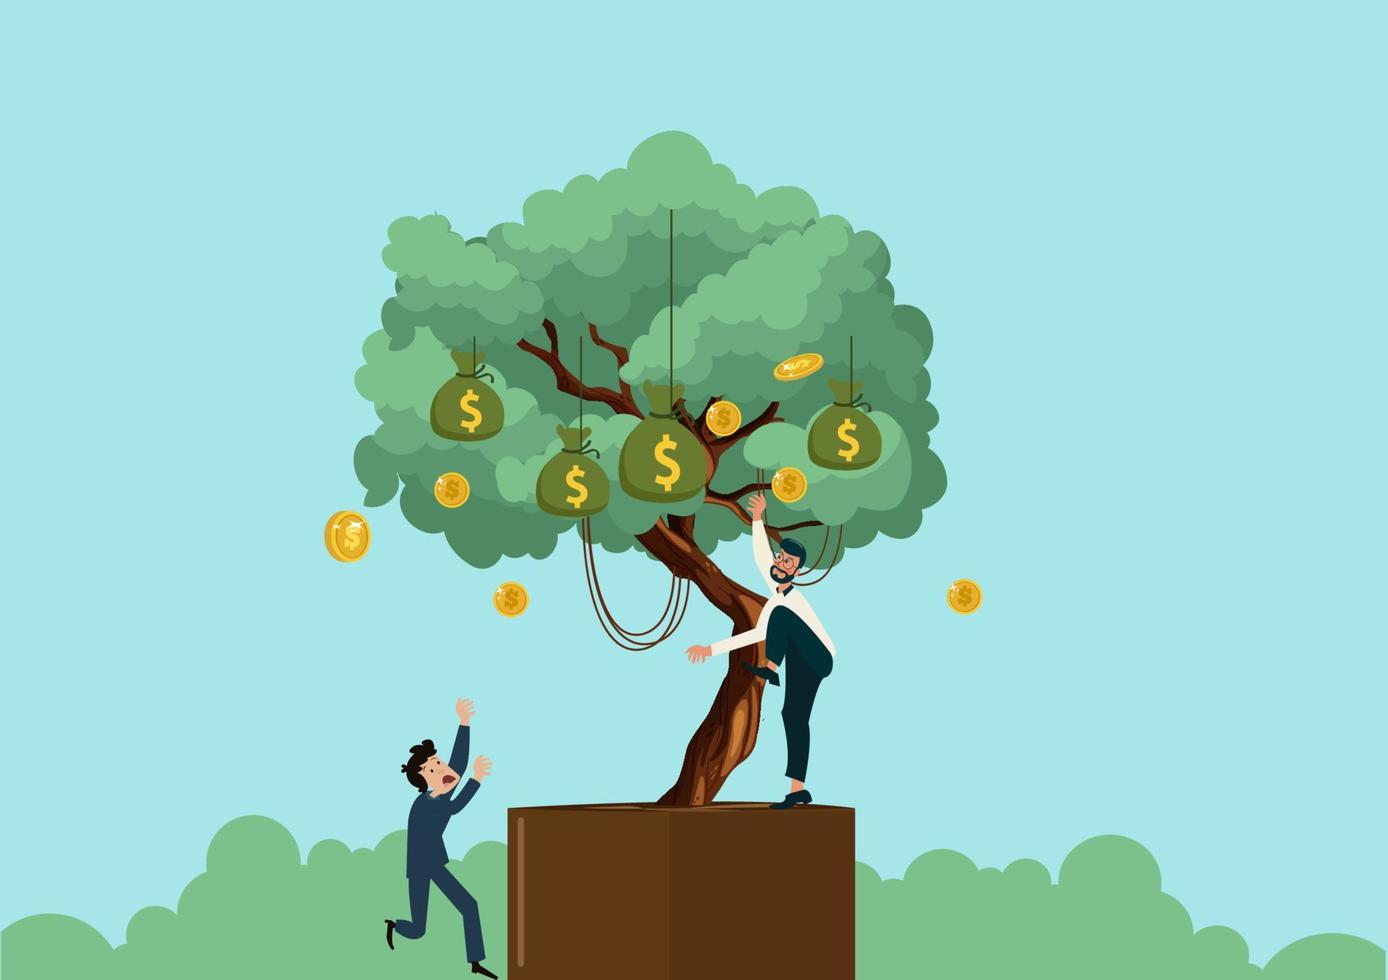 zakenlieden profiteren van goed uitgeruste middelen. vergelijk het beeld van bomen als een bron van geld dat met goede winst kan worden geïnvesteerd. vlakke stijl cartoon illustratie vector